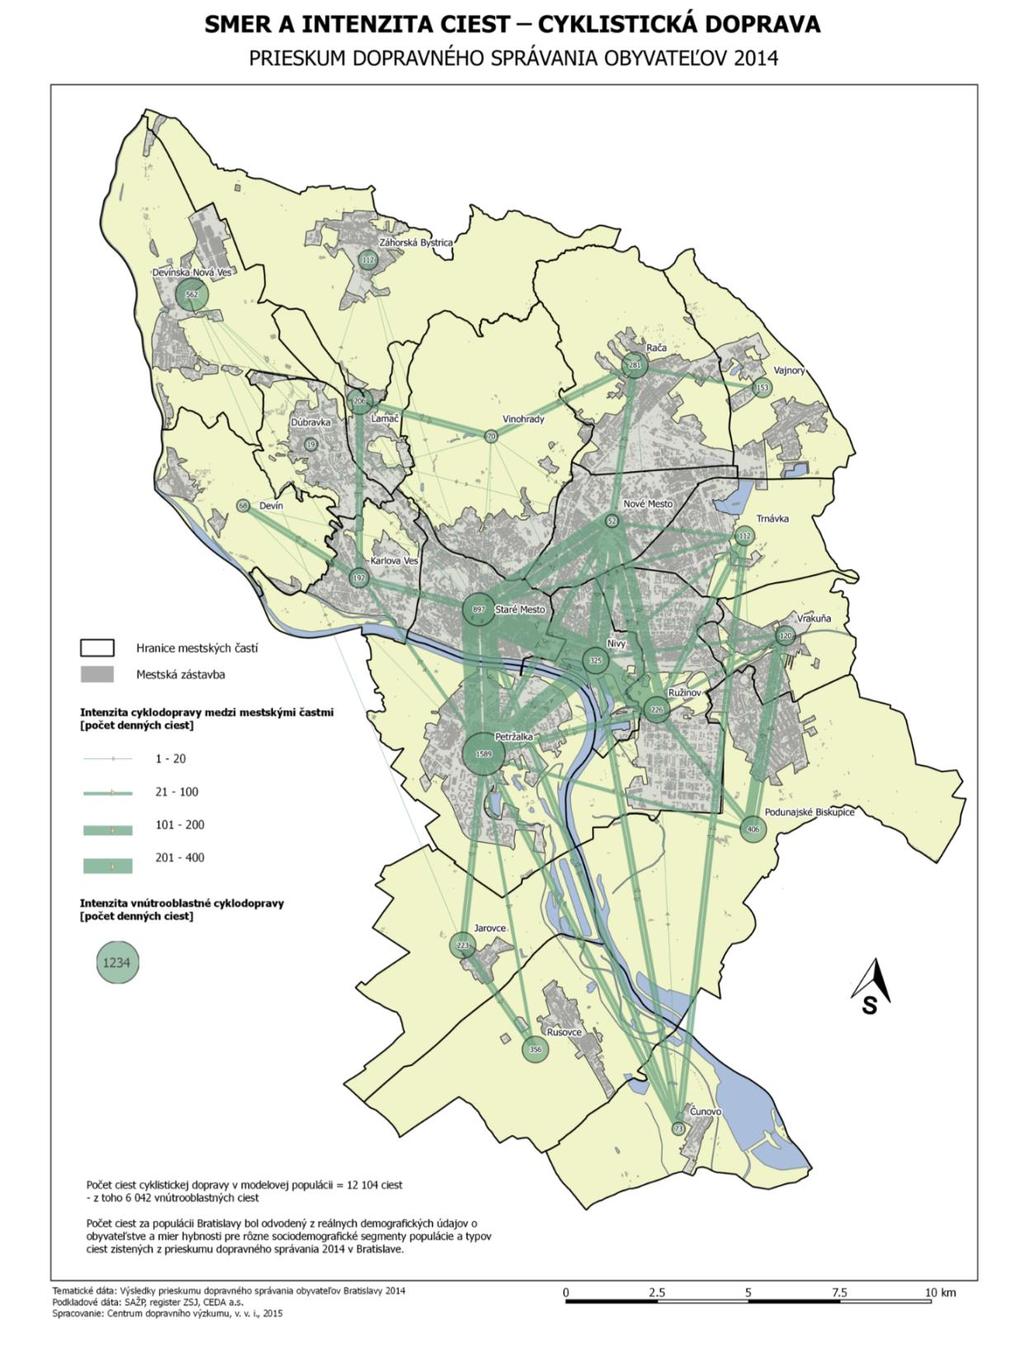 Obrázok 7: Smer a intenzita ciest (Územný generel dopravy hl. mesta SR Bratislavy, 2014) 6.1.10.